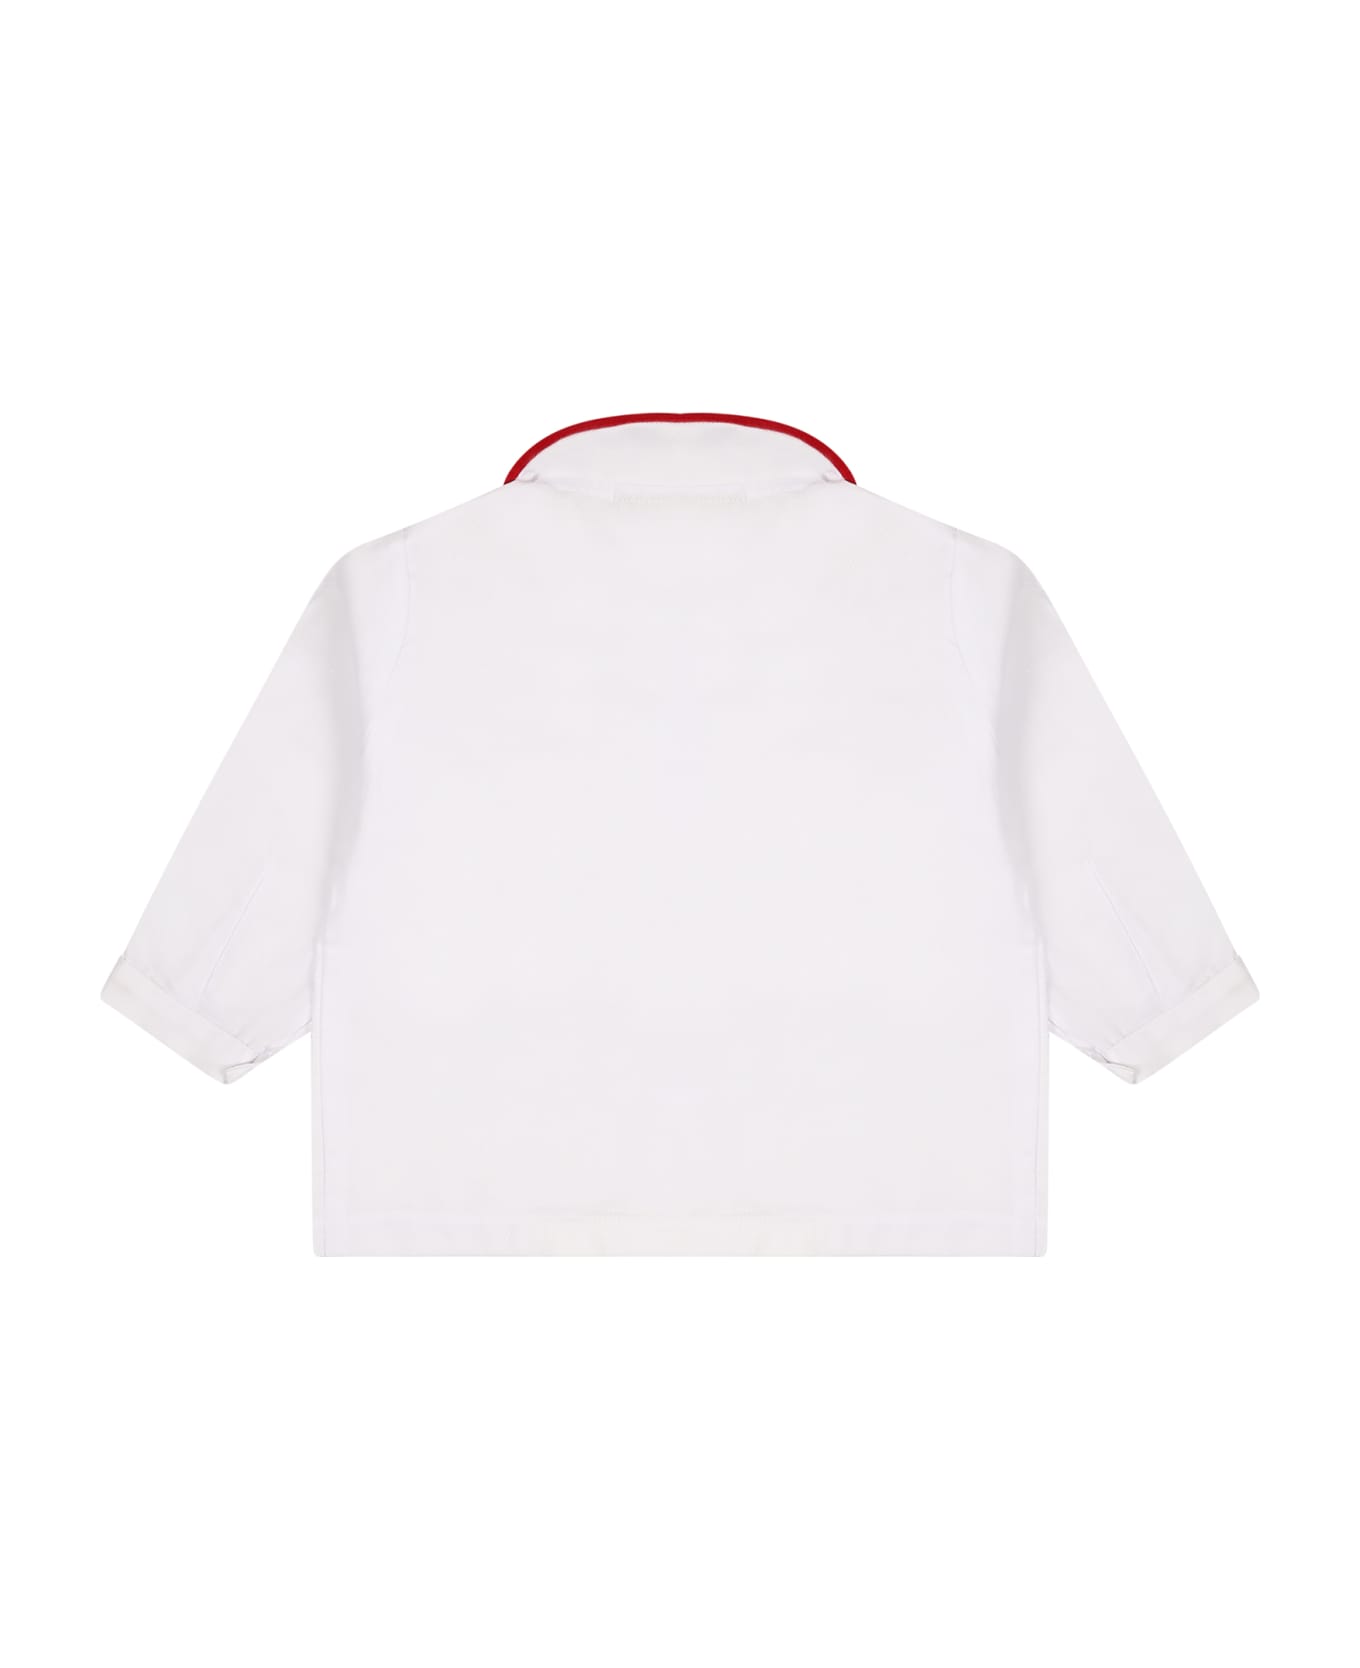 La stupenderia White Shirt For Baby Boy - White